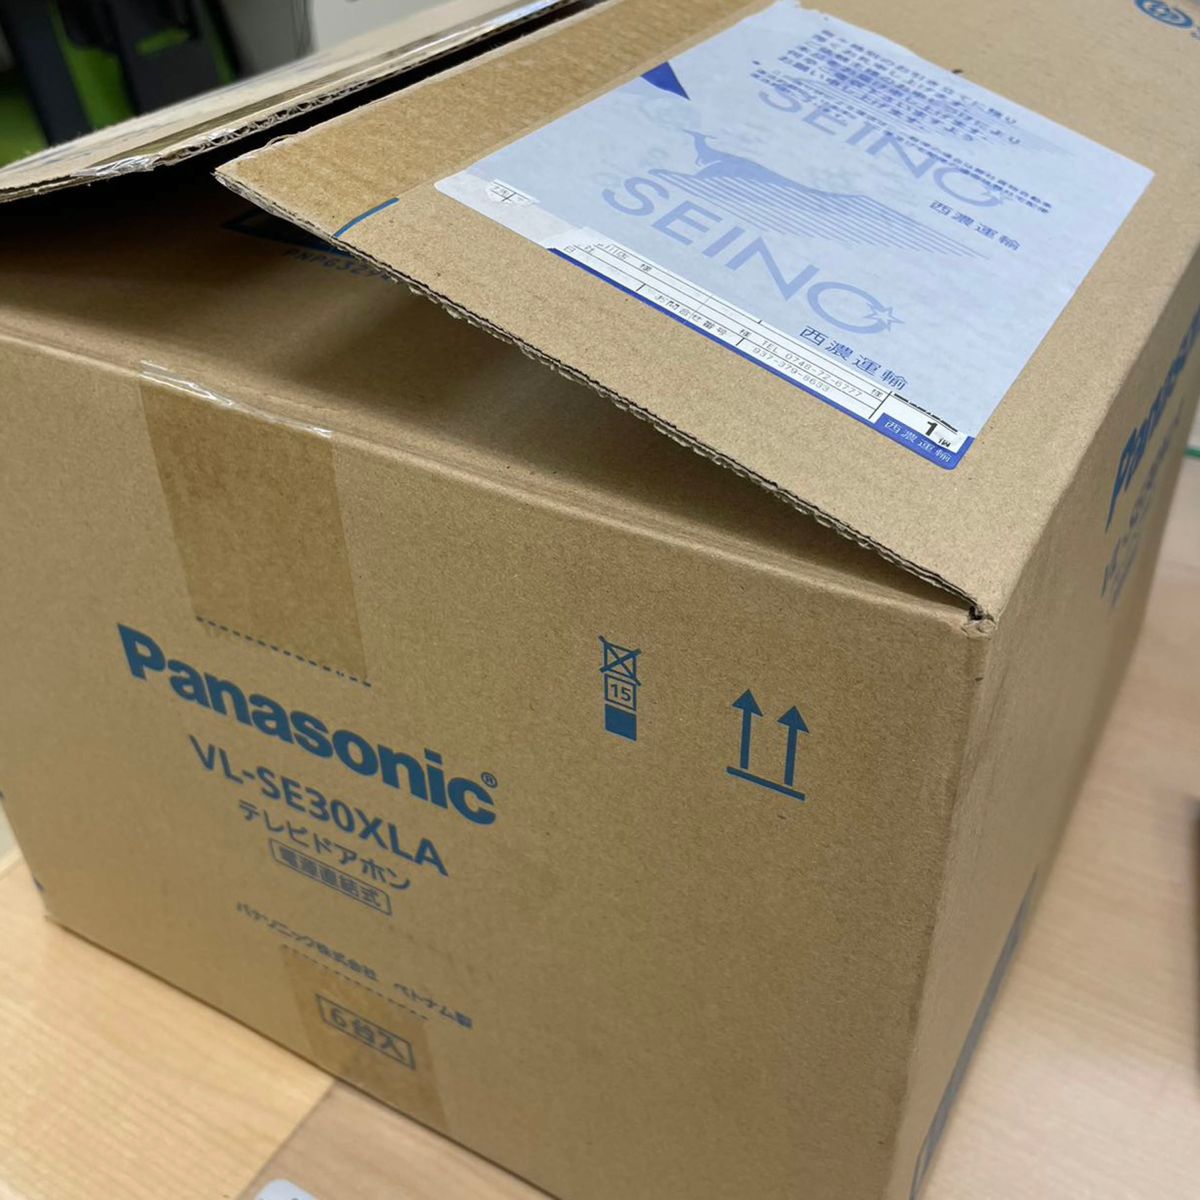 Panasonic テレビドアホン VL-SE30XLA 6台セット｜PayPayフリマ